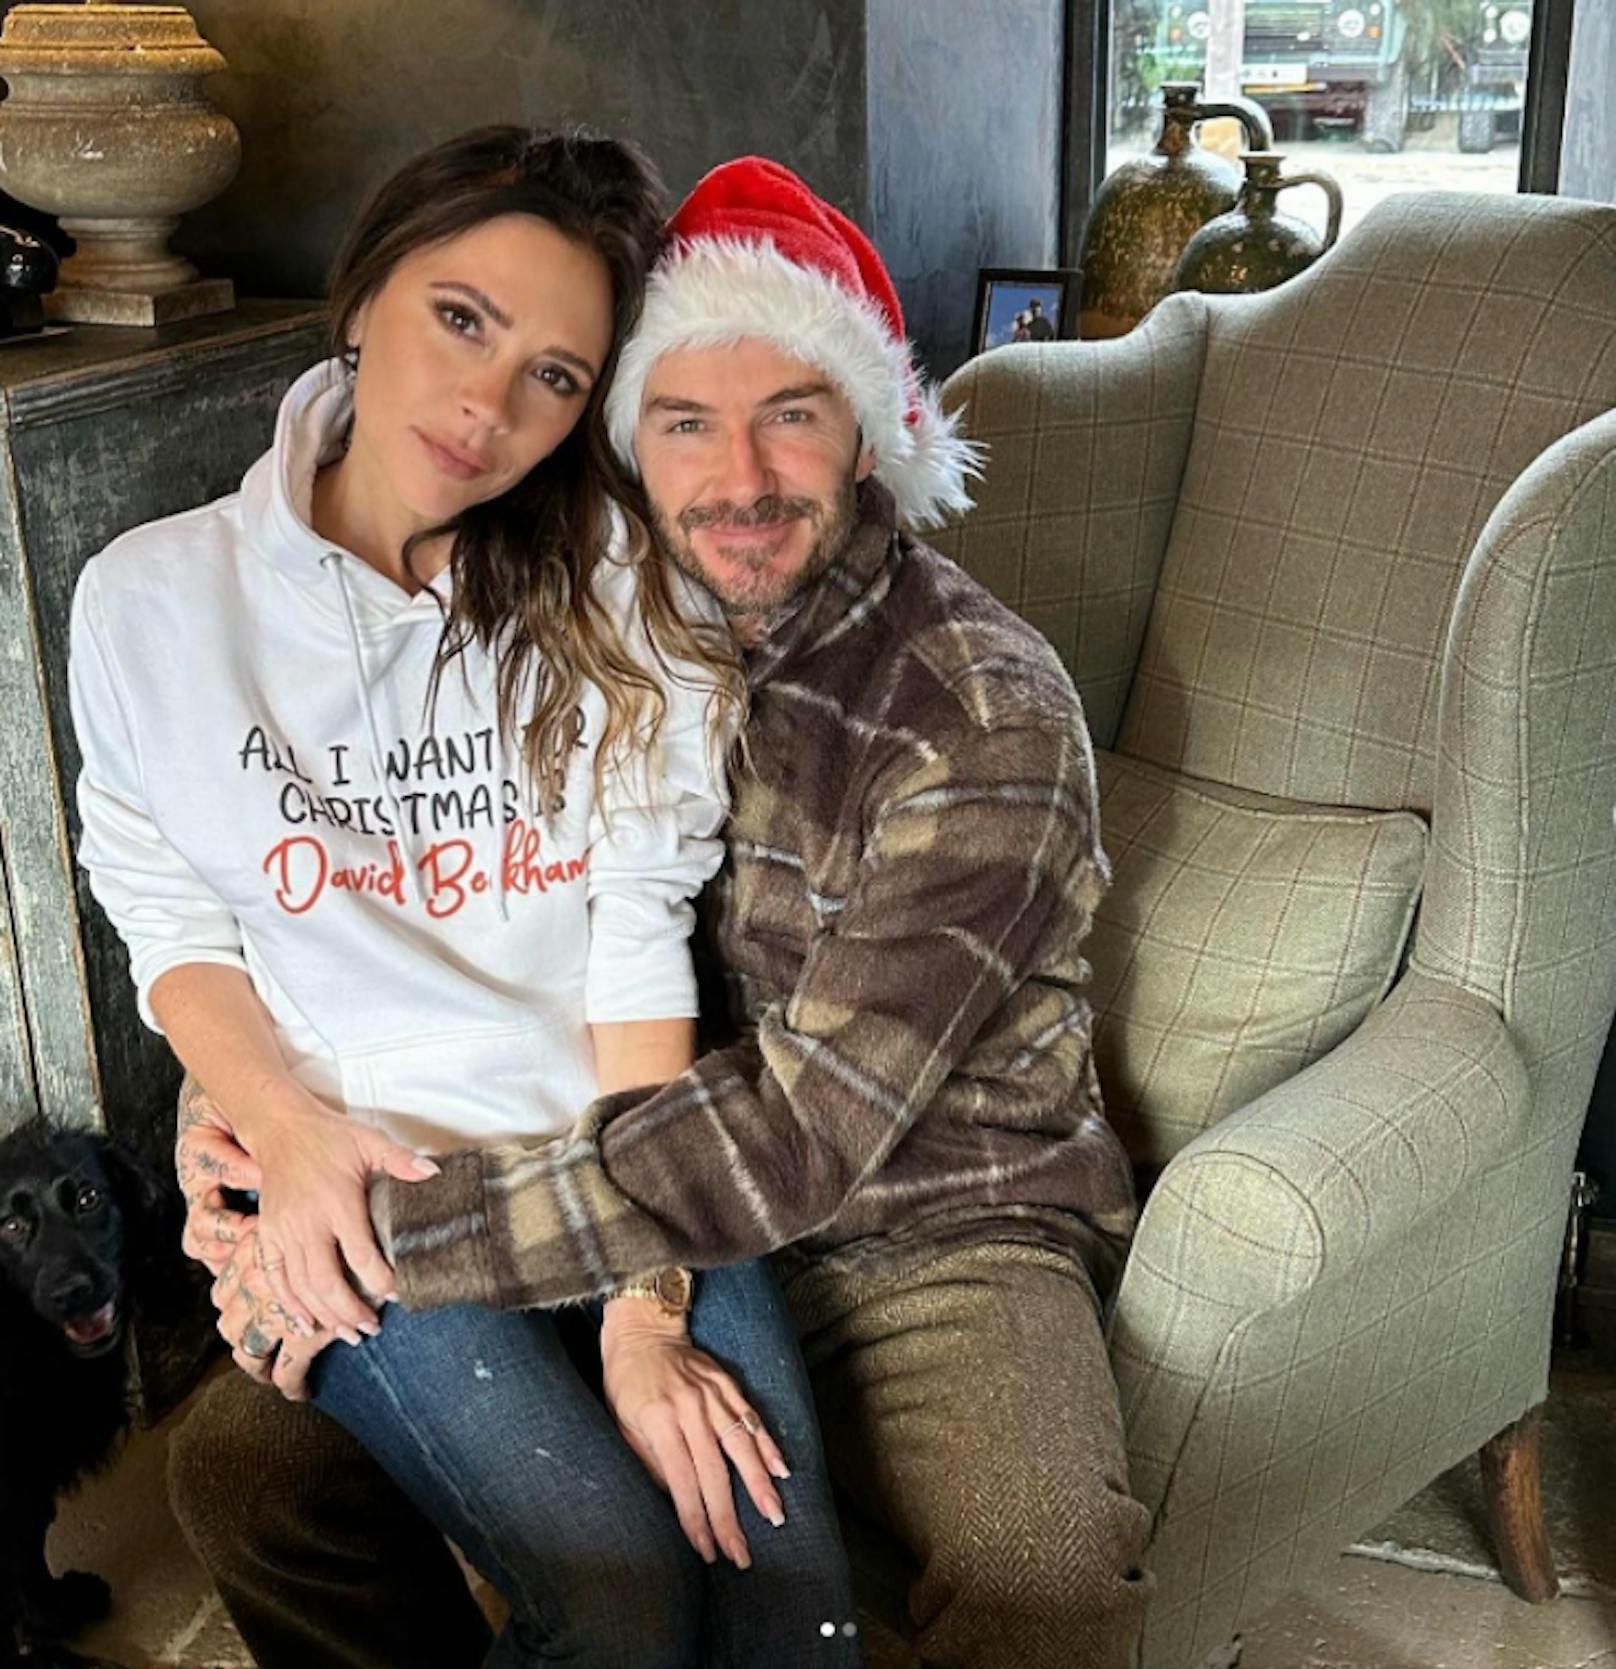 Victoria Beckham liebt David sichtlich. Der Beweis steht auf ihrem Pullover, den sie zu Weihnachten trug. 